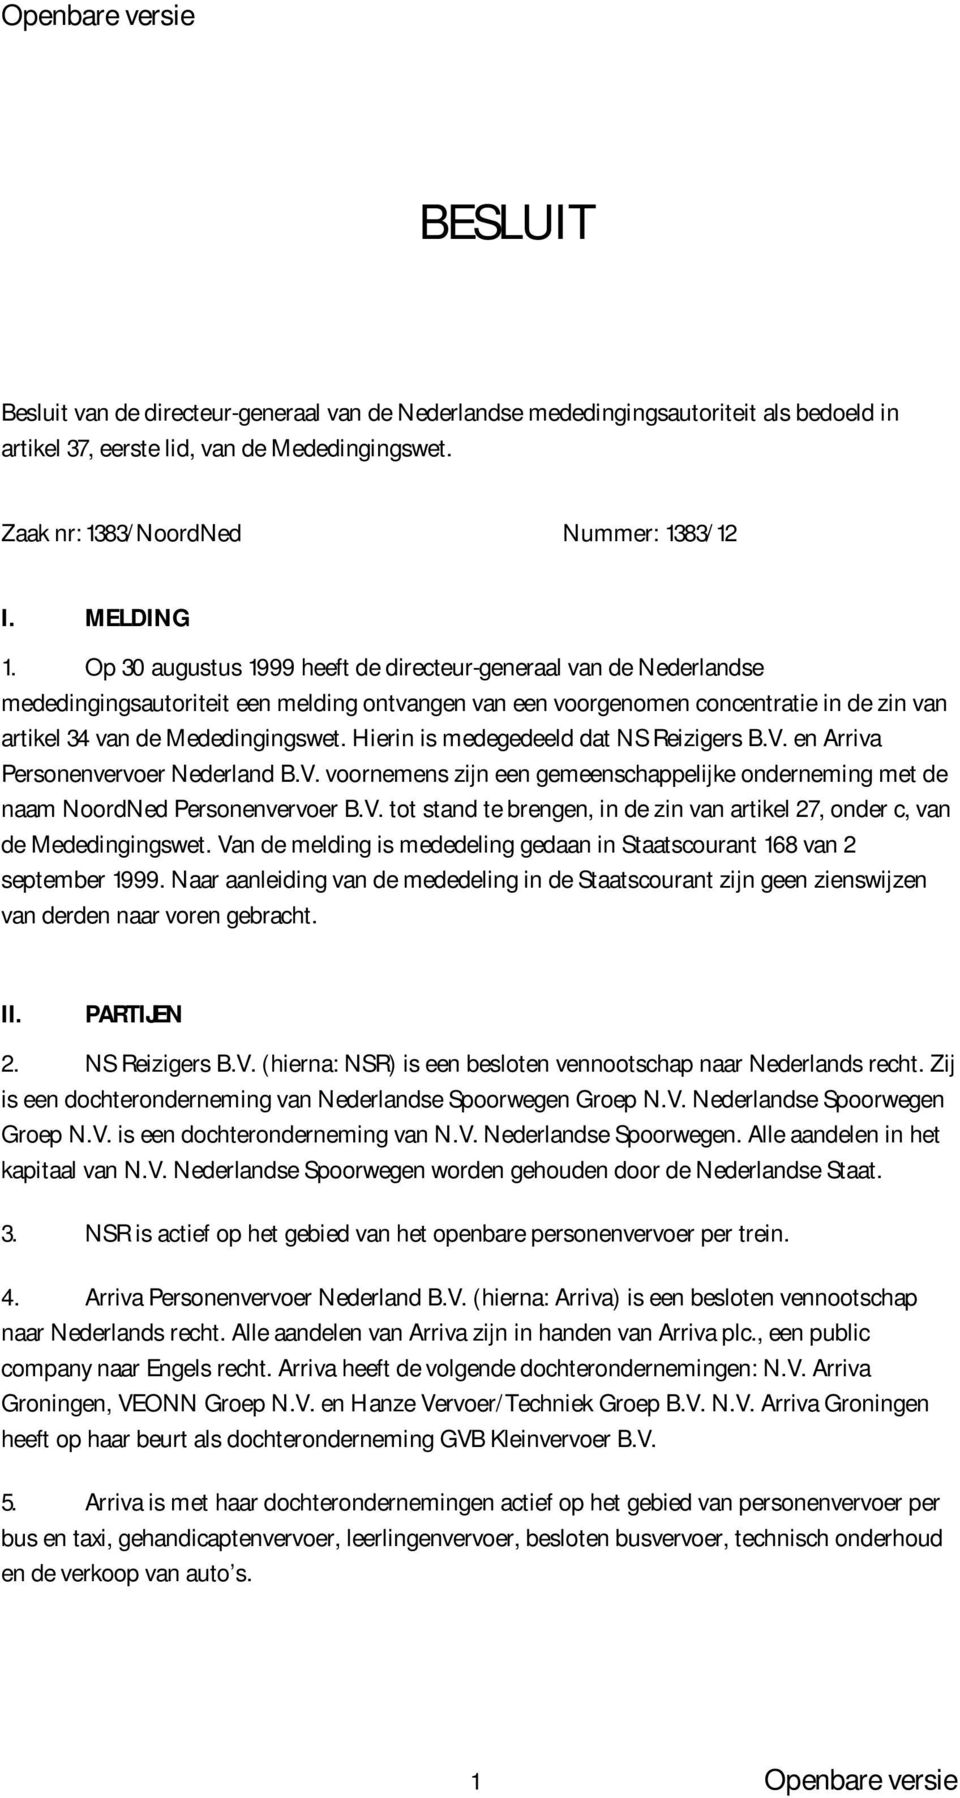 Hierin is medegedeeld dat NS Reizigers B.V. en Arriva Personenvervoer Nederland B.V. voornemens zijn een gemeenschappelijke onderneming met de naam NoordNed Personenvervoer B.V. tot stand te brengen, in de zin van artikel 27, onder c, van de Mededingingswet.